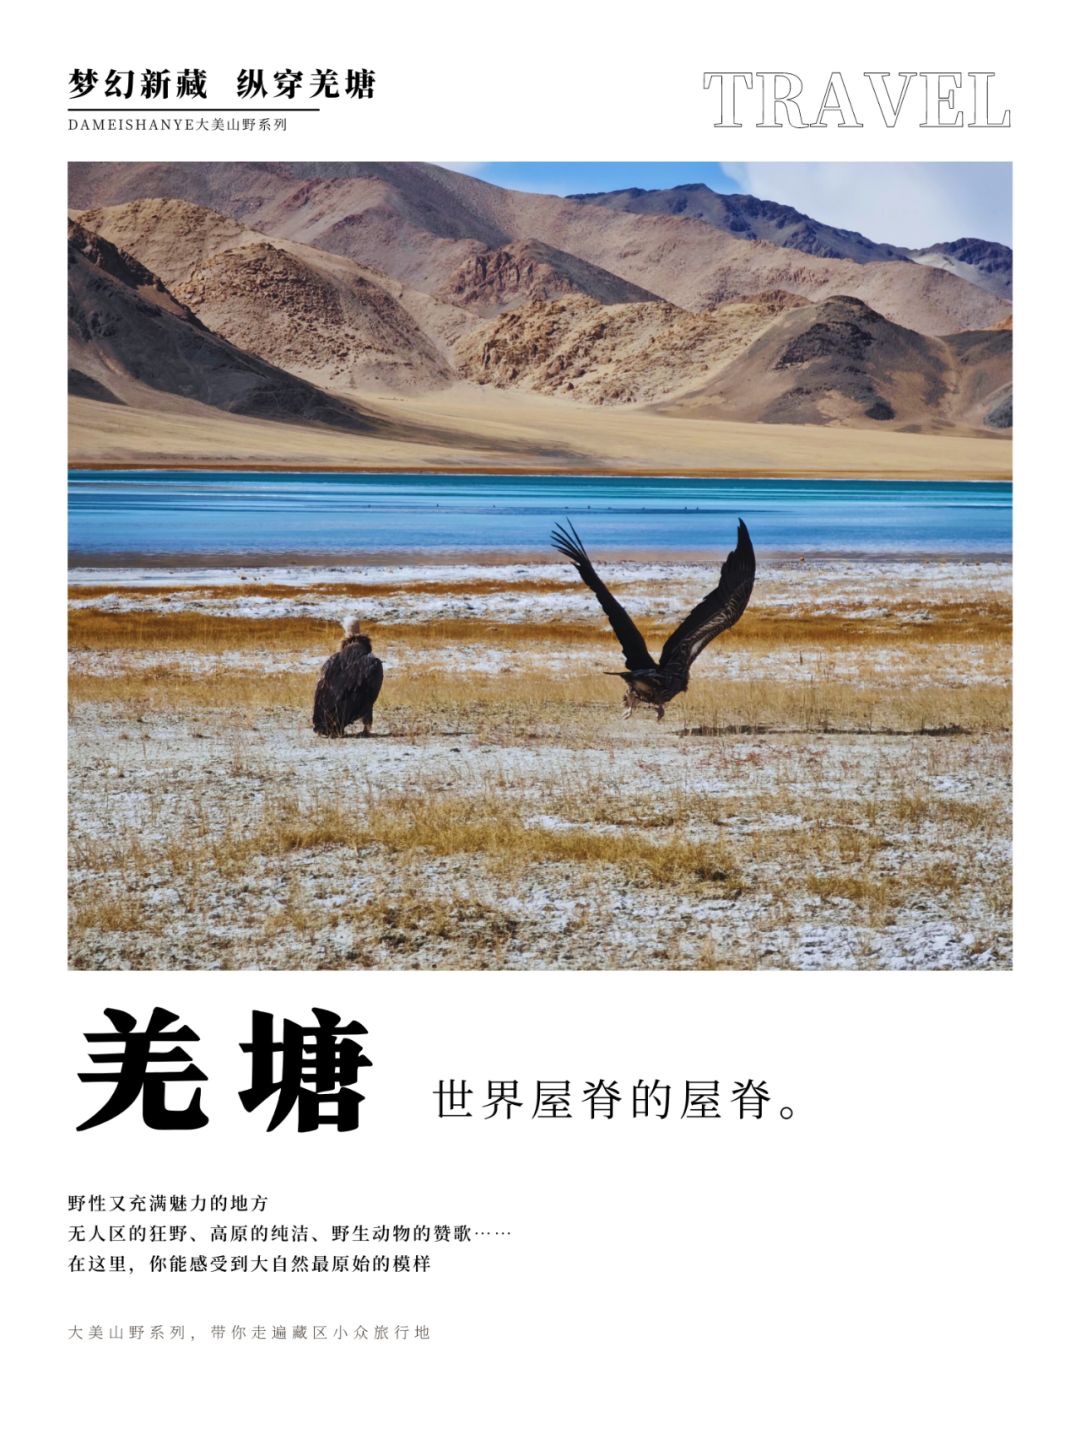 穿越羌塘无人区、打卡新疆西藏两省小众景点